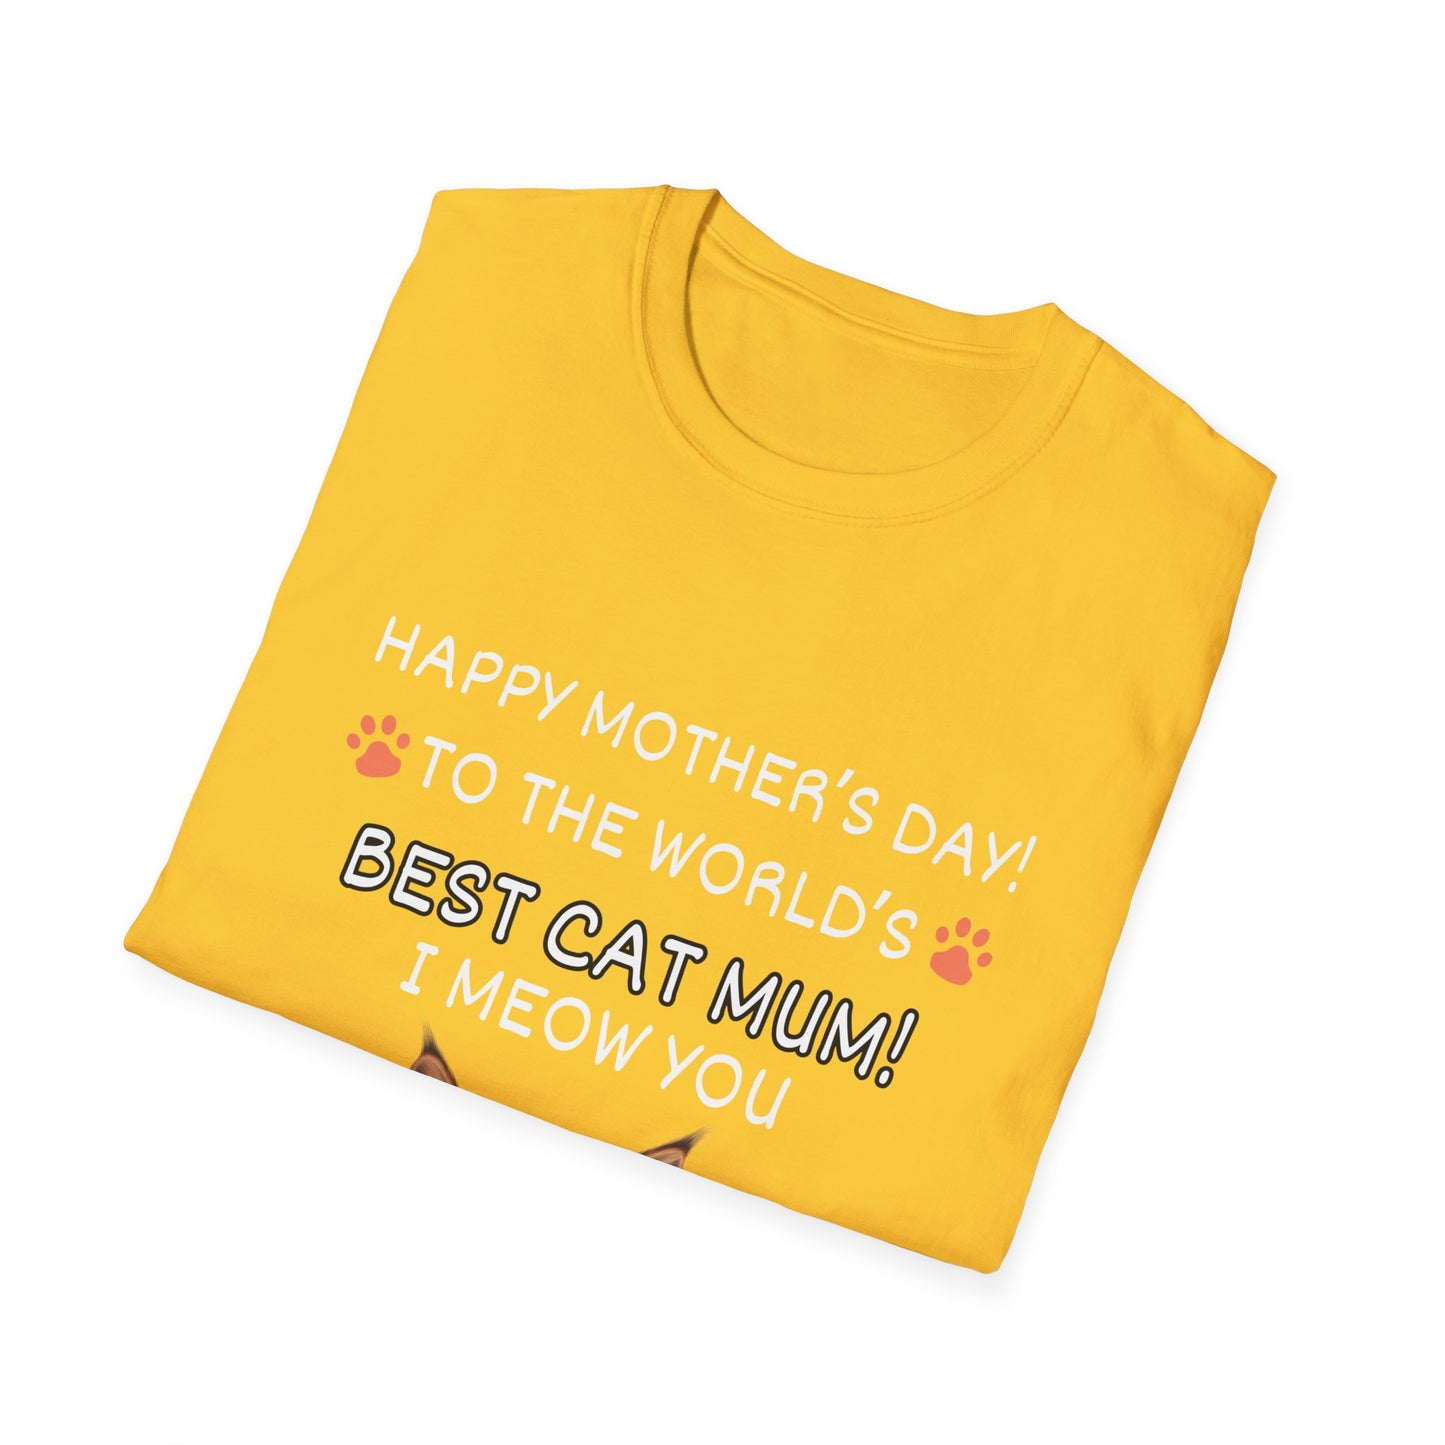 Best Cat Mum "I Meow you"-Unisex Softstyle T-Shirt